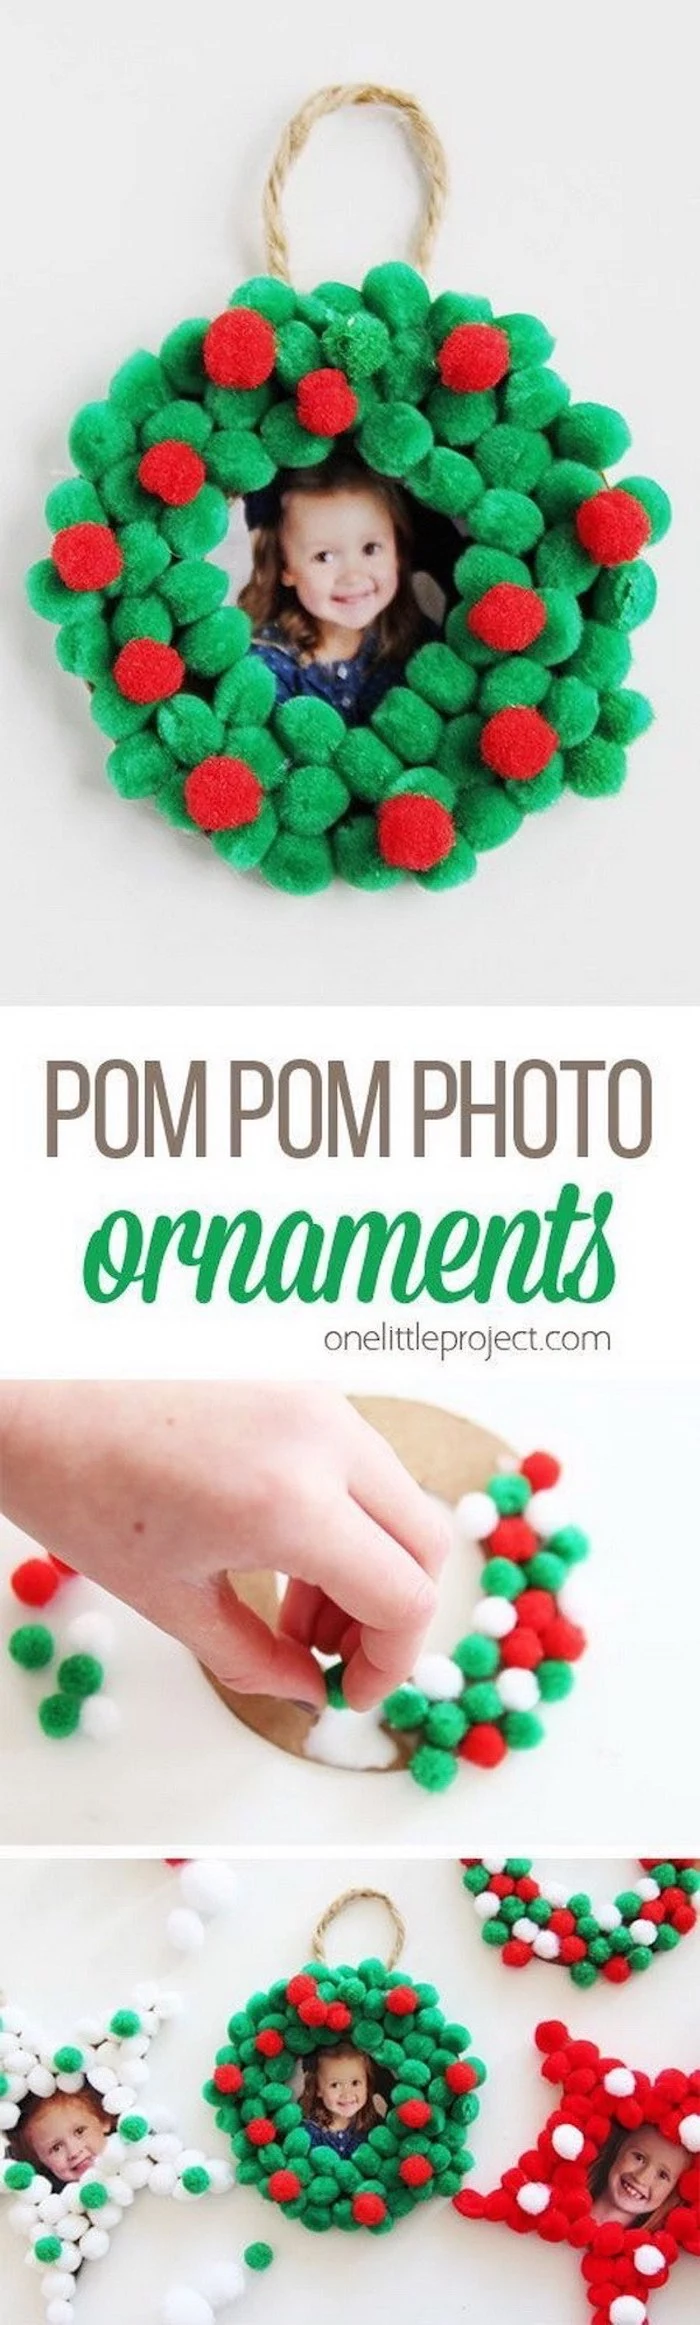 pom pom photo ornaments, christmas ornaments for kids, step by step diy tutorial, photo collage